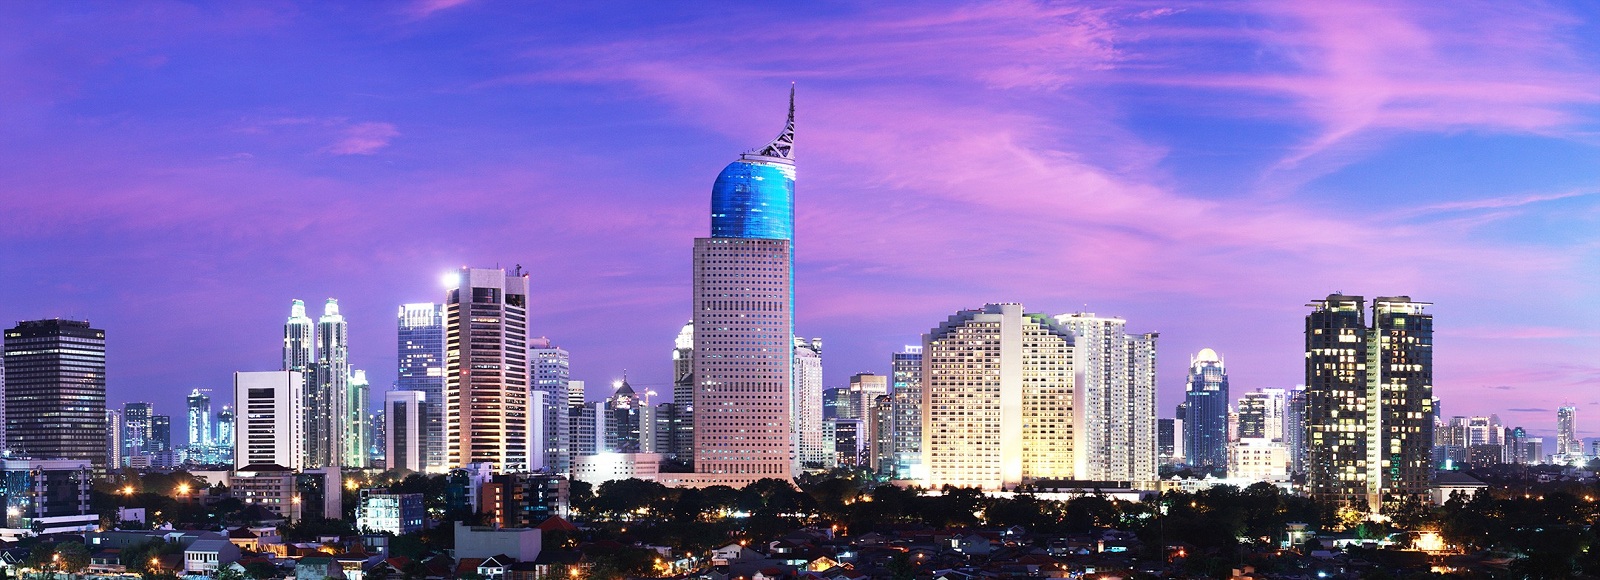 Transfer Offers in Jakarta. Low Cost Transfers in  Jakarta 